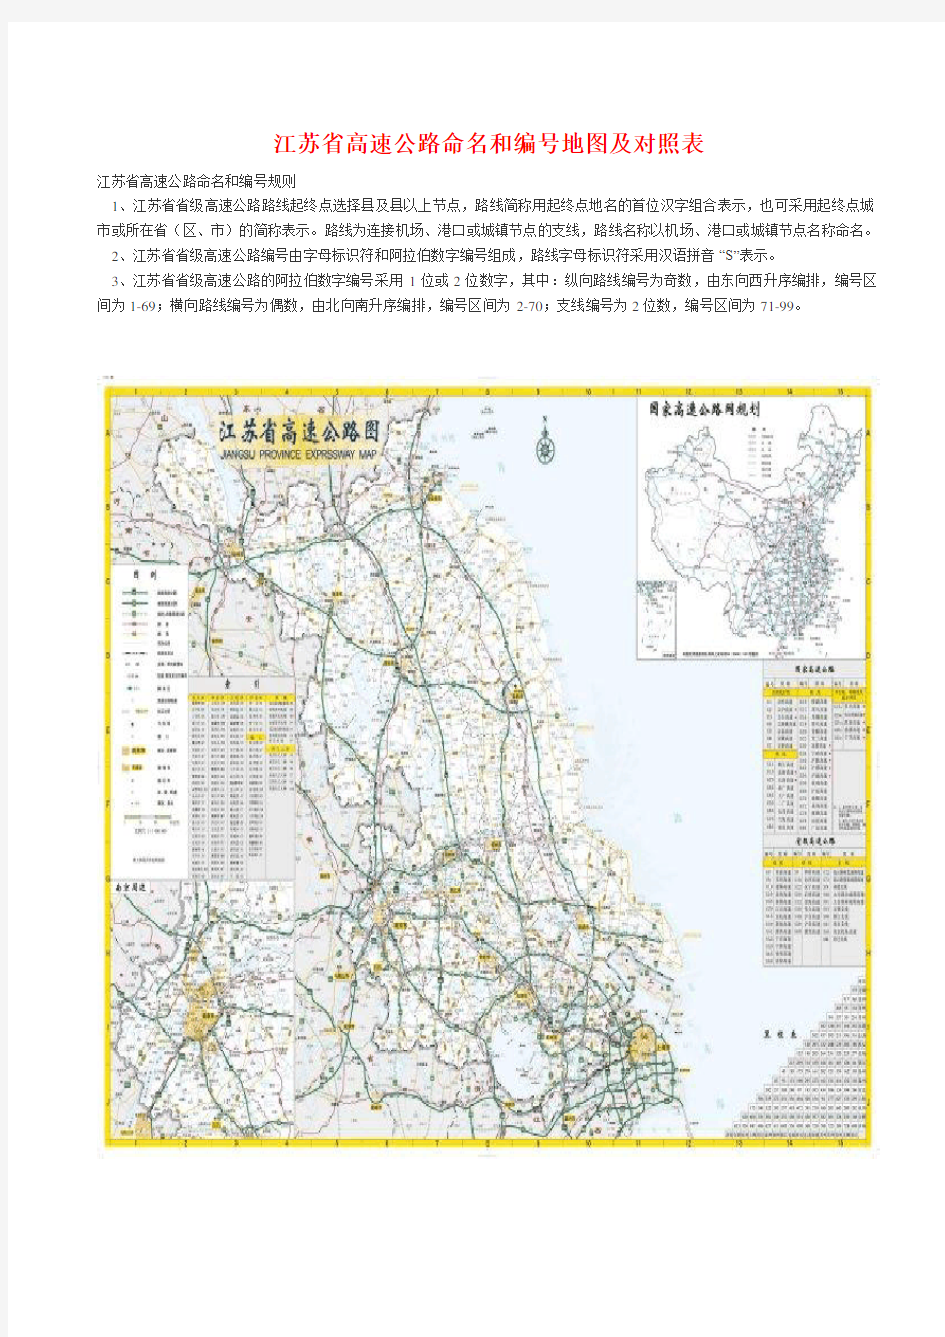 江苏省高速公路命名和编号地图及对照表